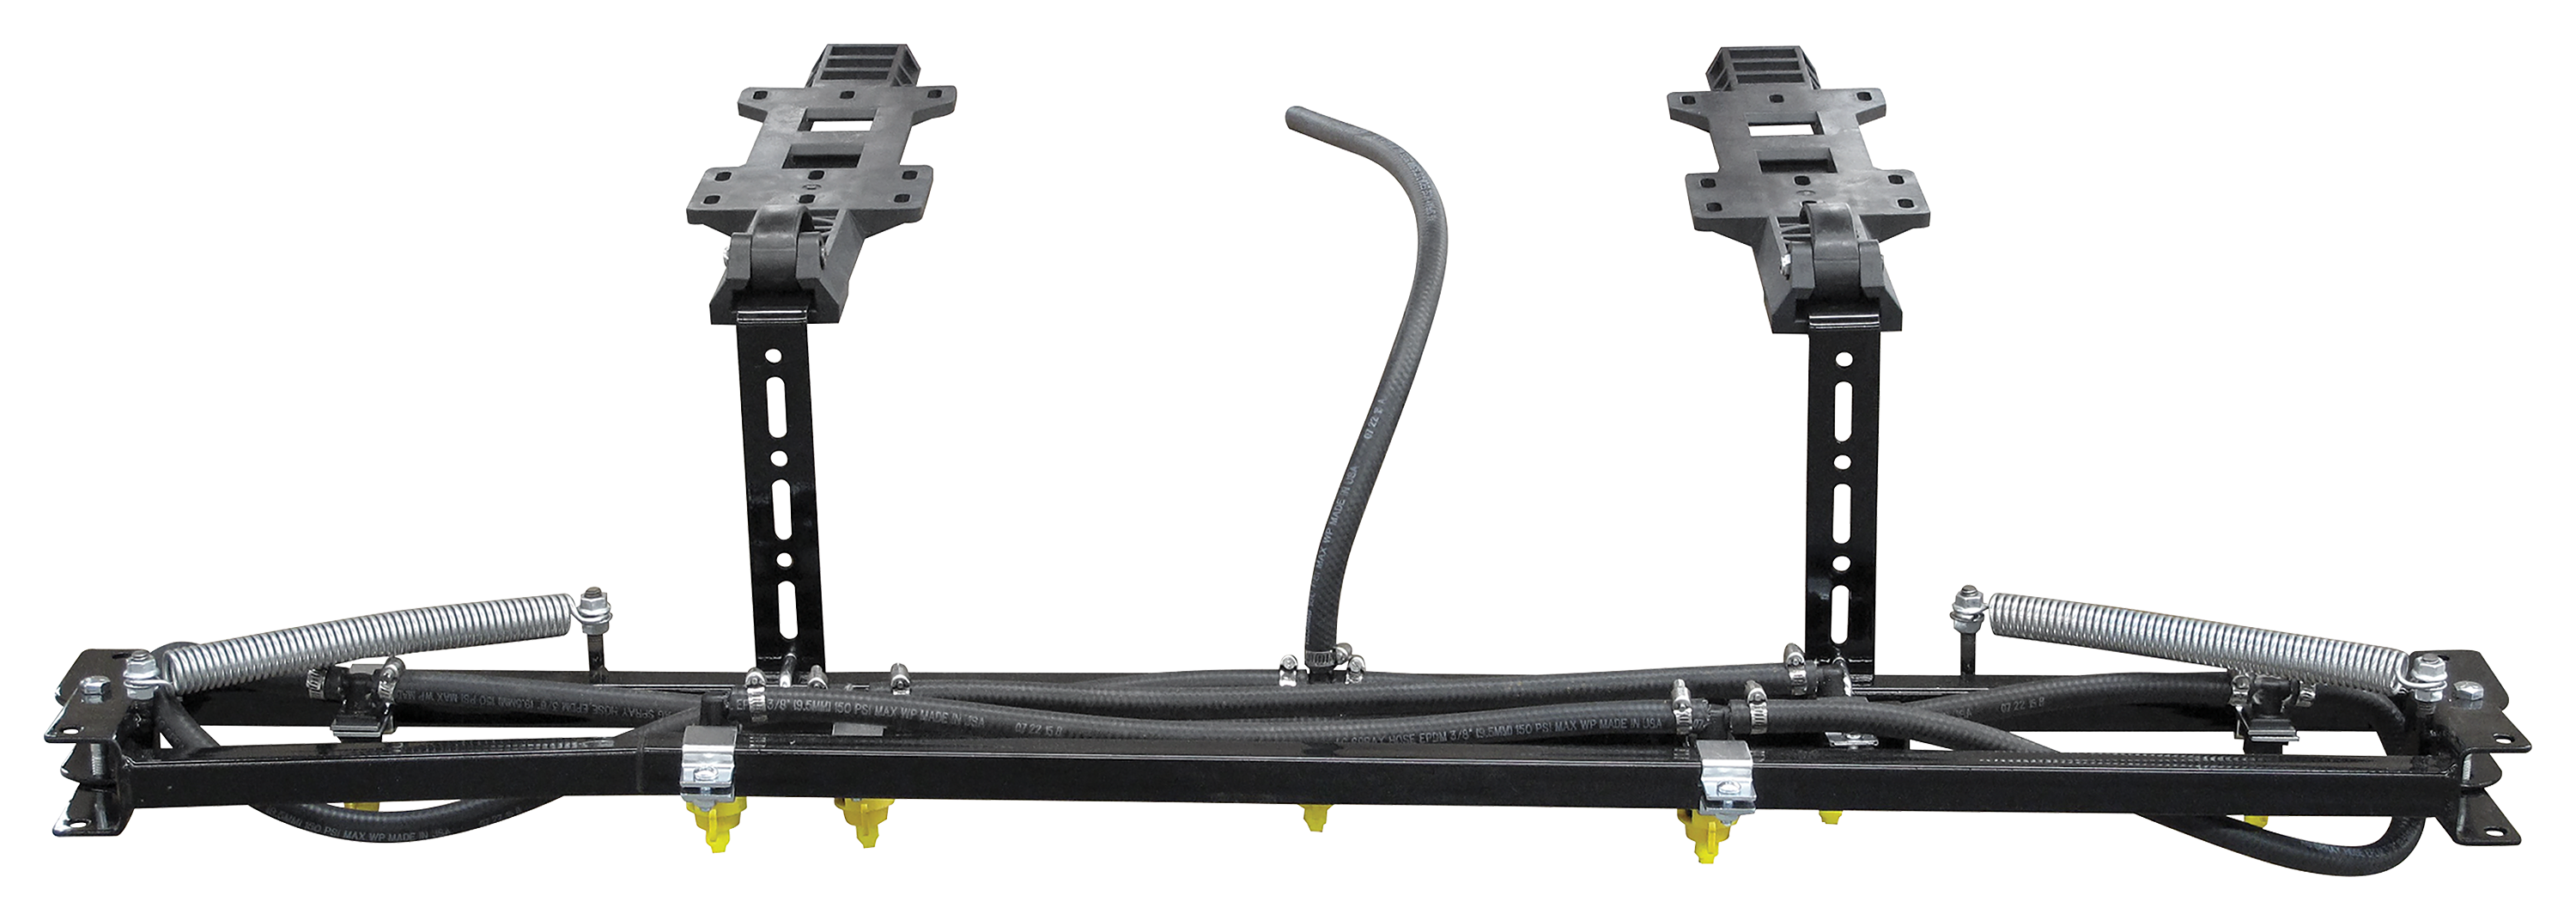 Fimco 7-Nozzle Standard ATV Boom Kit